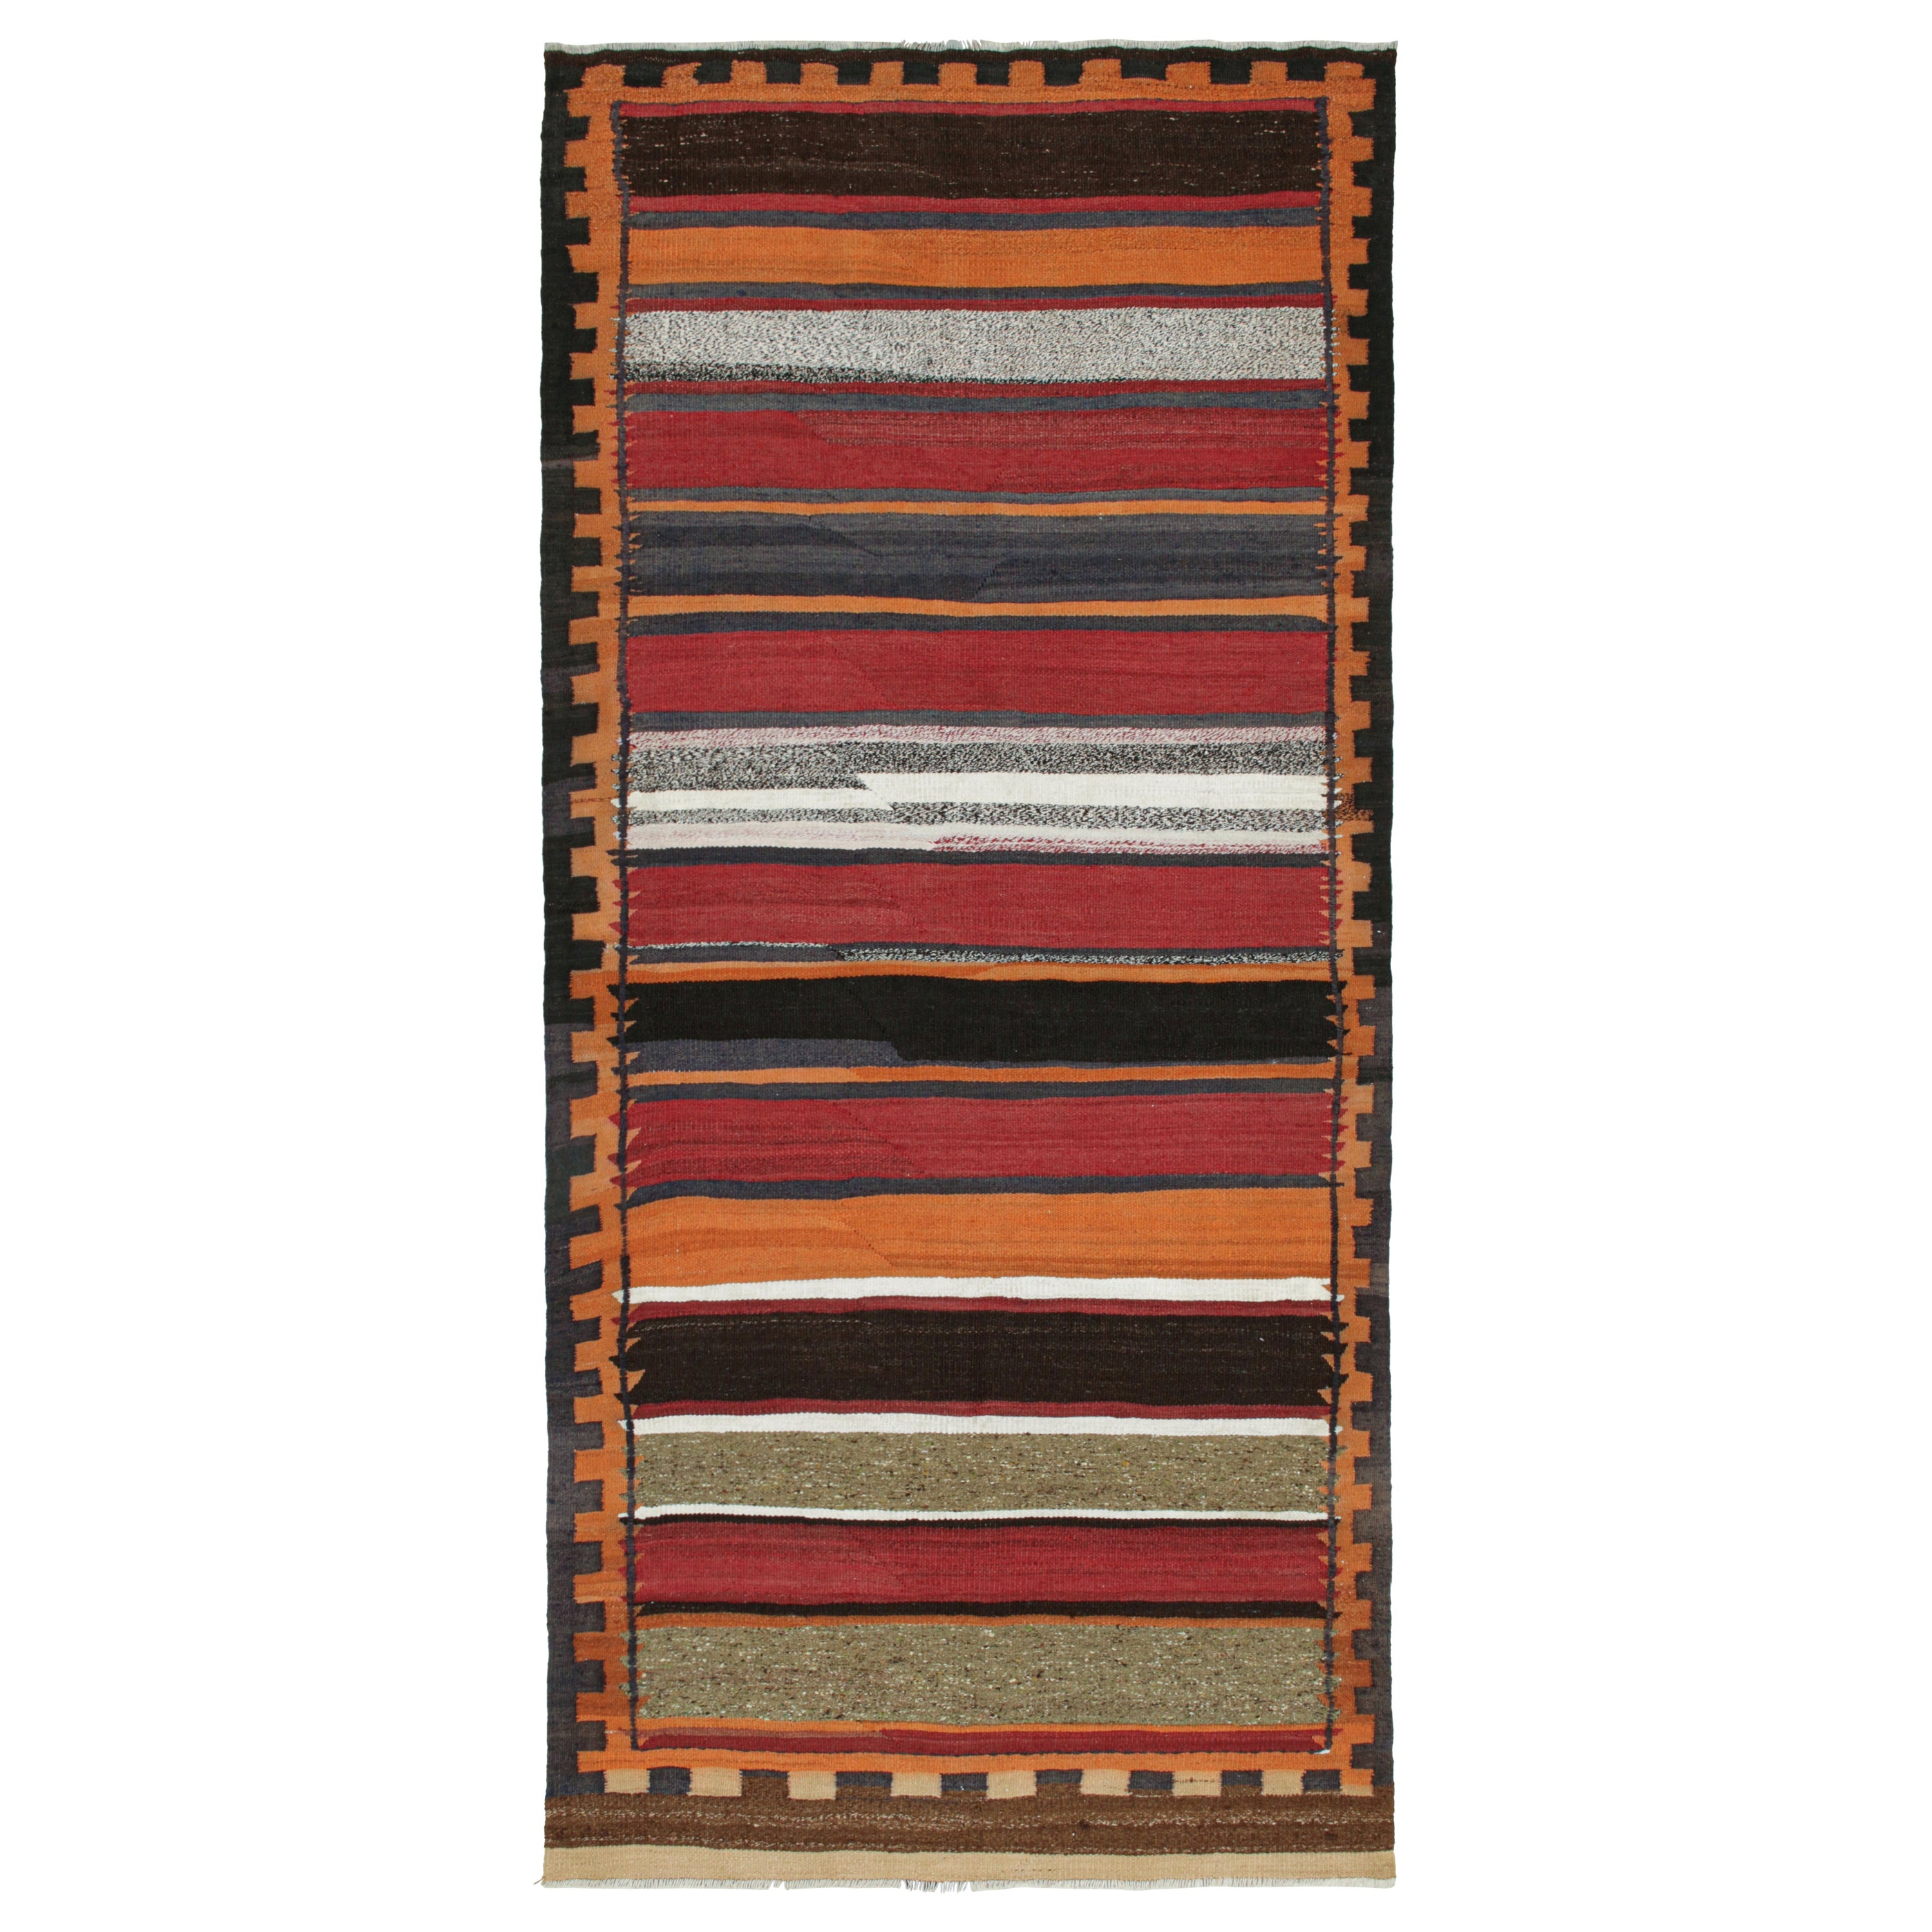 Shahsavan Persischer Kelim in polychromen Streifen von Teppich & Kilim